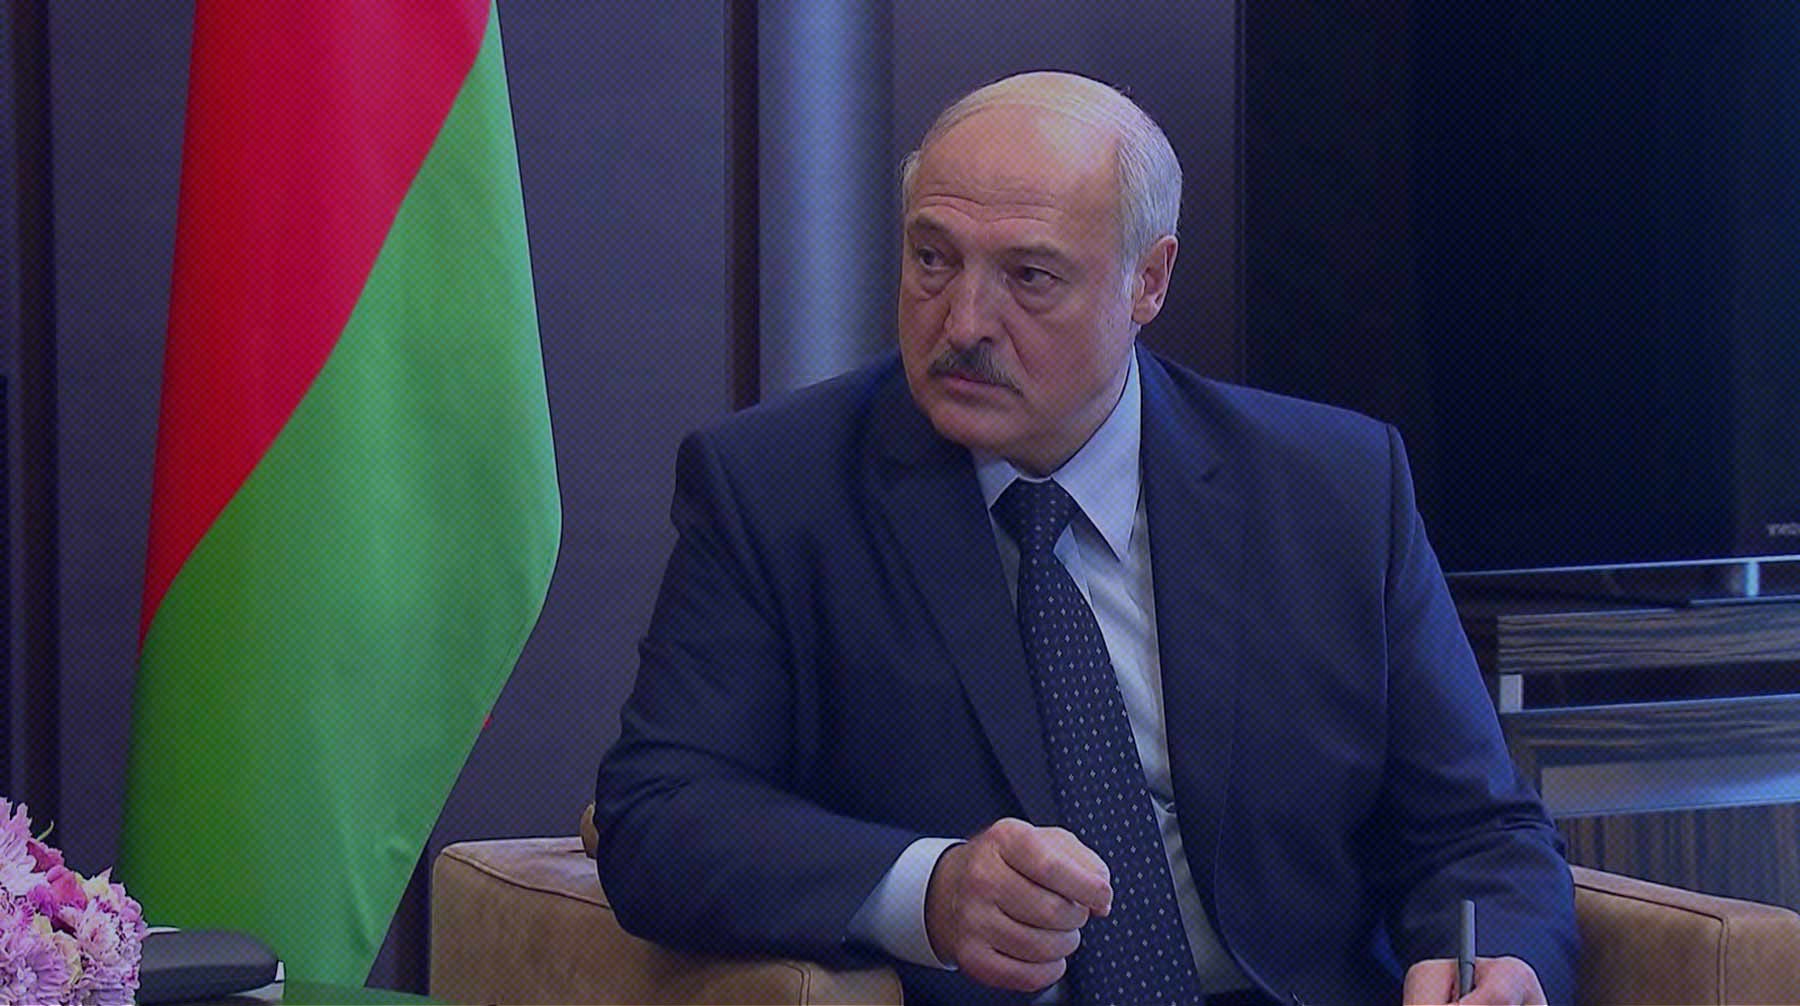 Белорусский лидер заявил, что у него уже есть договоренность с Путиным о таком визите Фото:  Global Look Press / Kremlin Pool